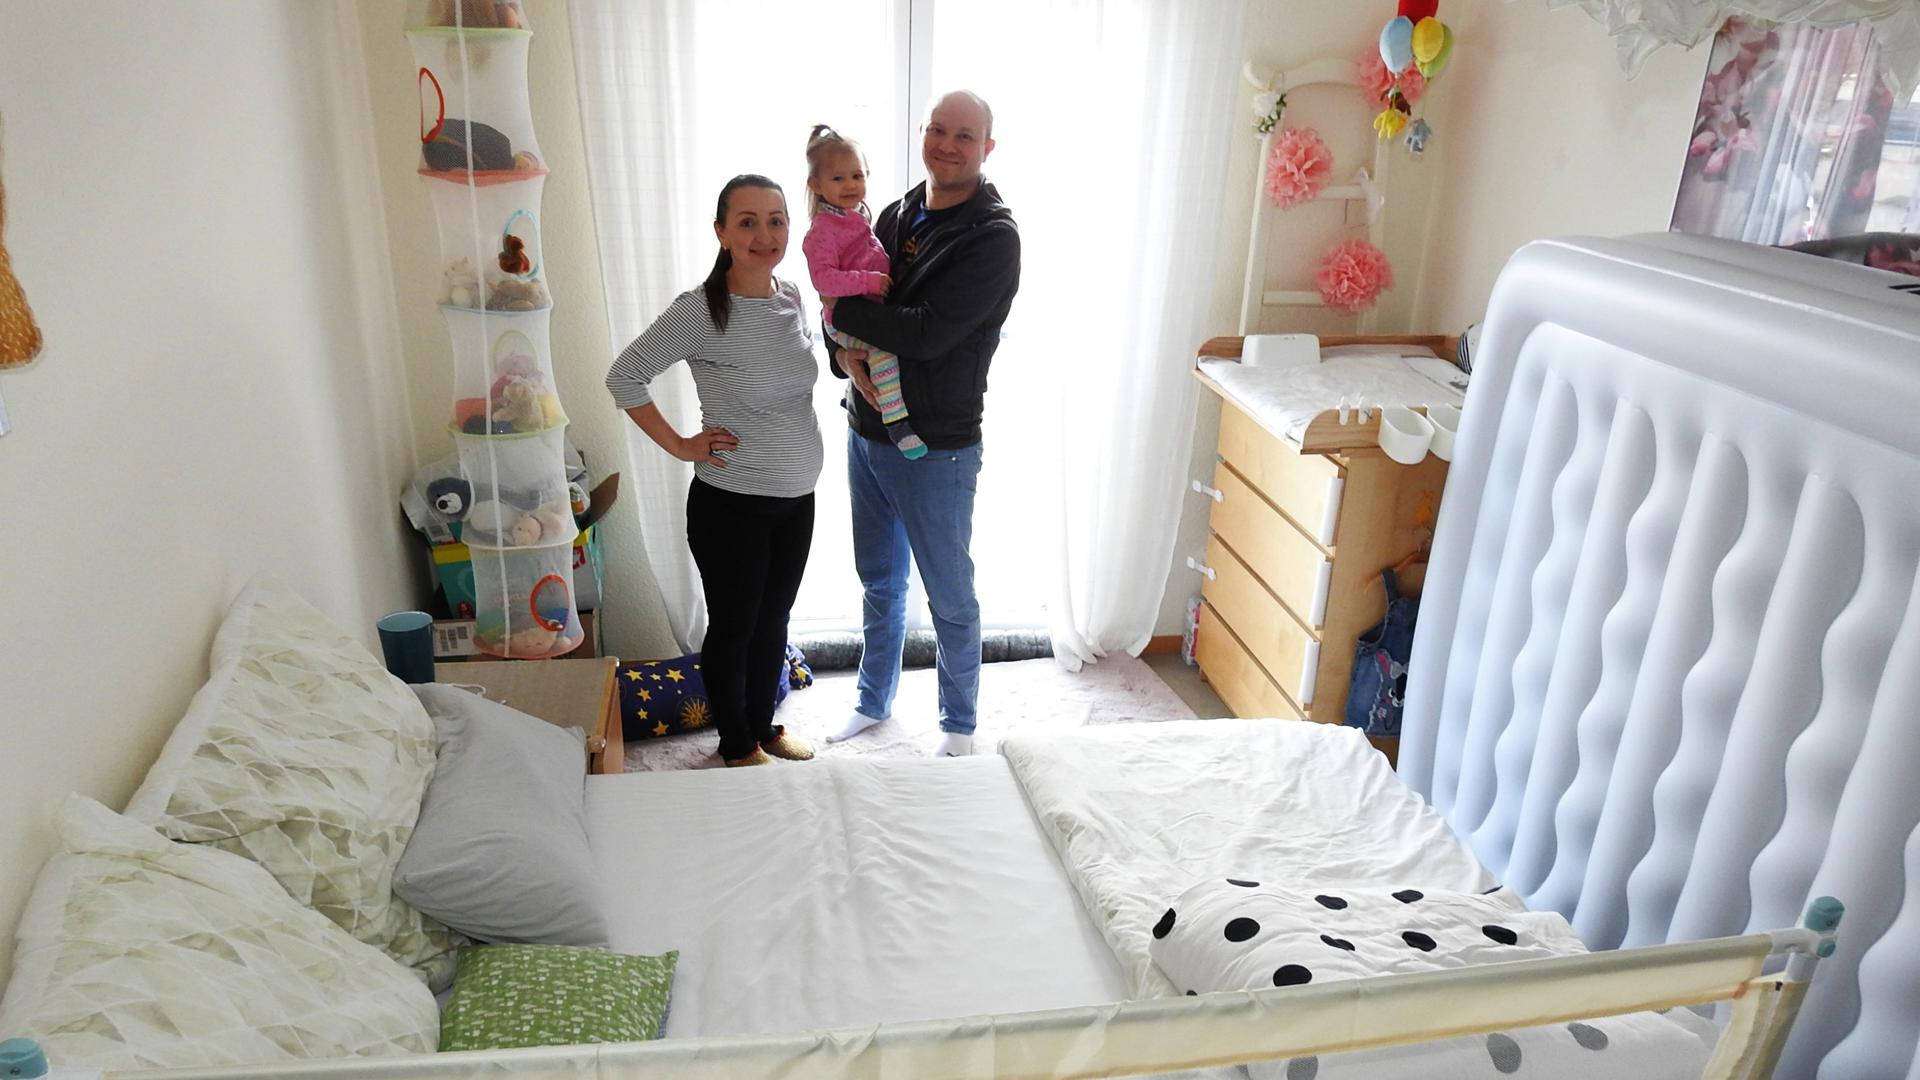 Familie Diana und Marco Simon mit Tochter in ihrem Schlafzimmer.